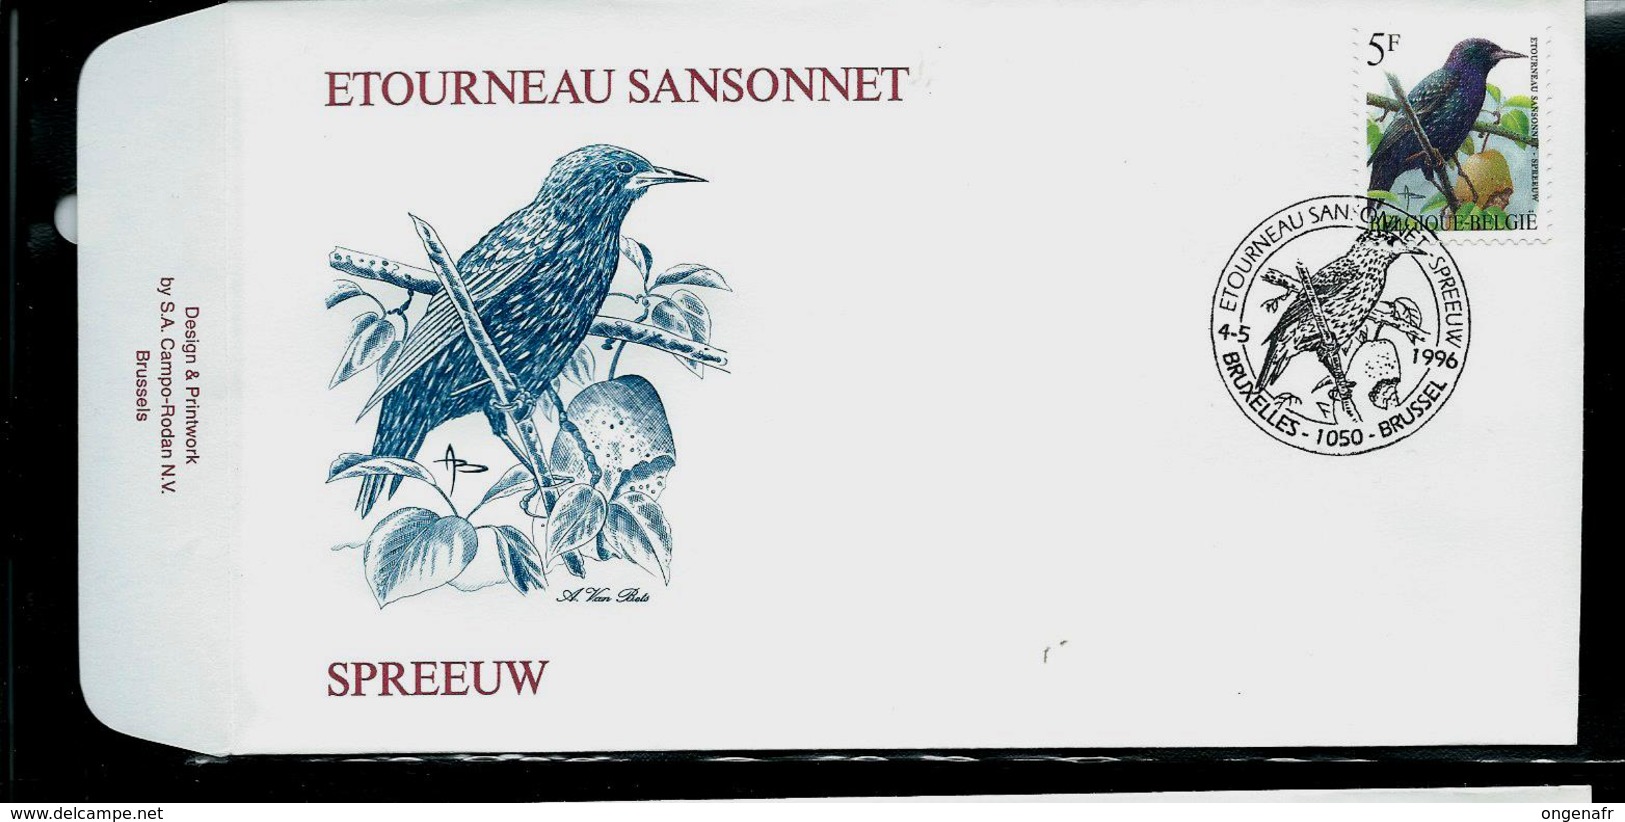 FDC Du N° 2638  Etourneau Sansonnet  /  Spreeuw  Obl. Bruxelles - Brussel  06/05/1996 - 1985-.. Oiseaux (Buzin)